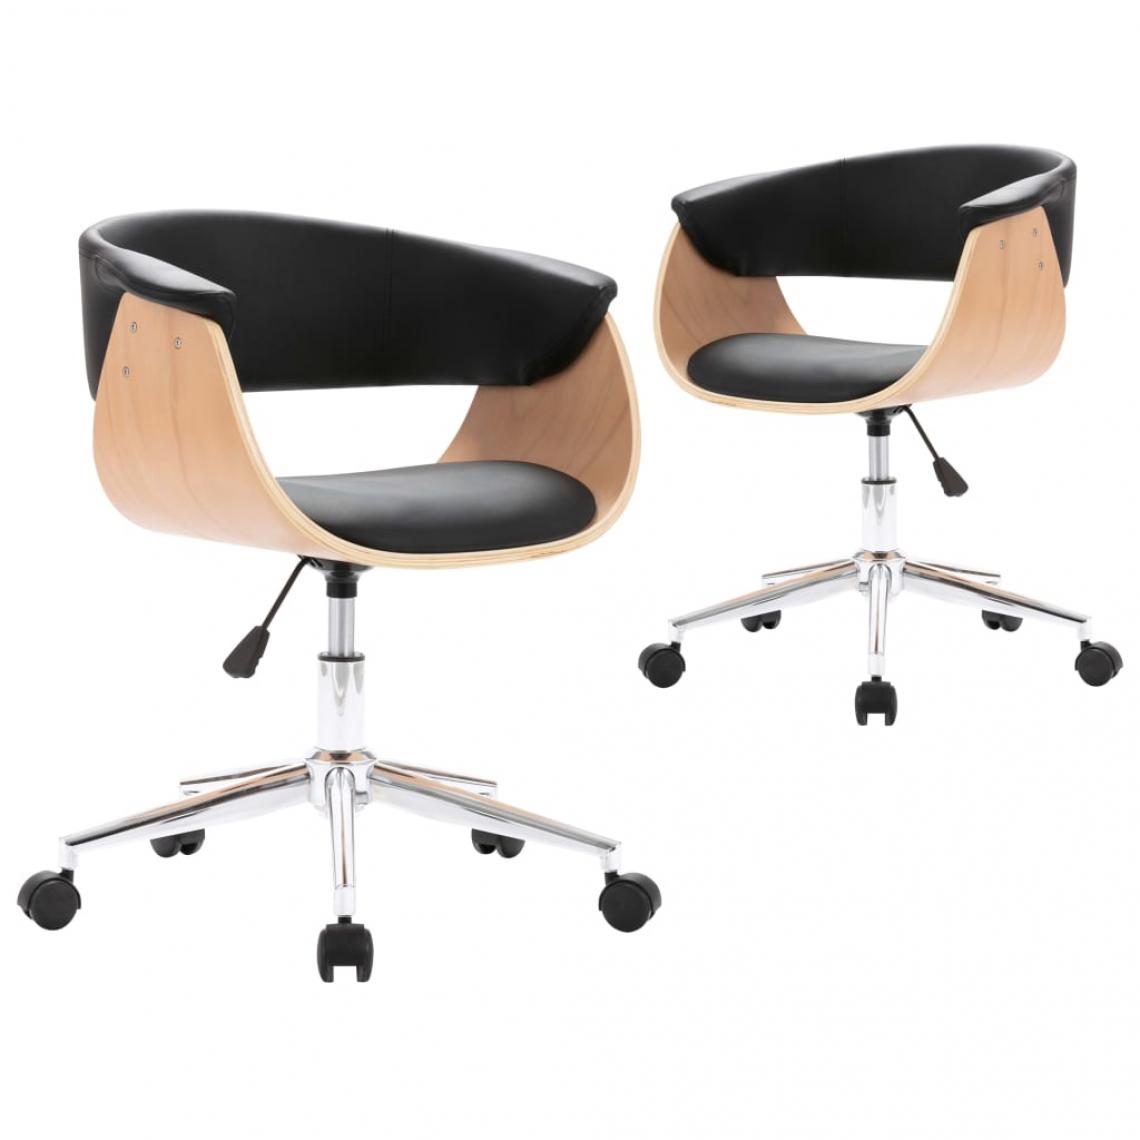 Decoshop26 - Lot de 2 chaises de salle à manger cuisine design contemporain similicuir noir CDS020813 - Chaises